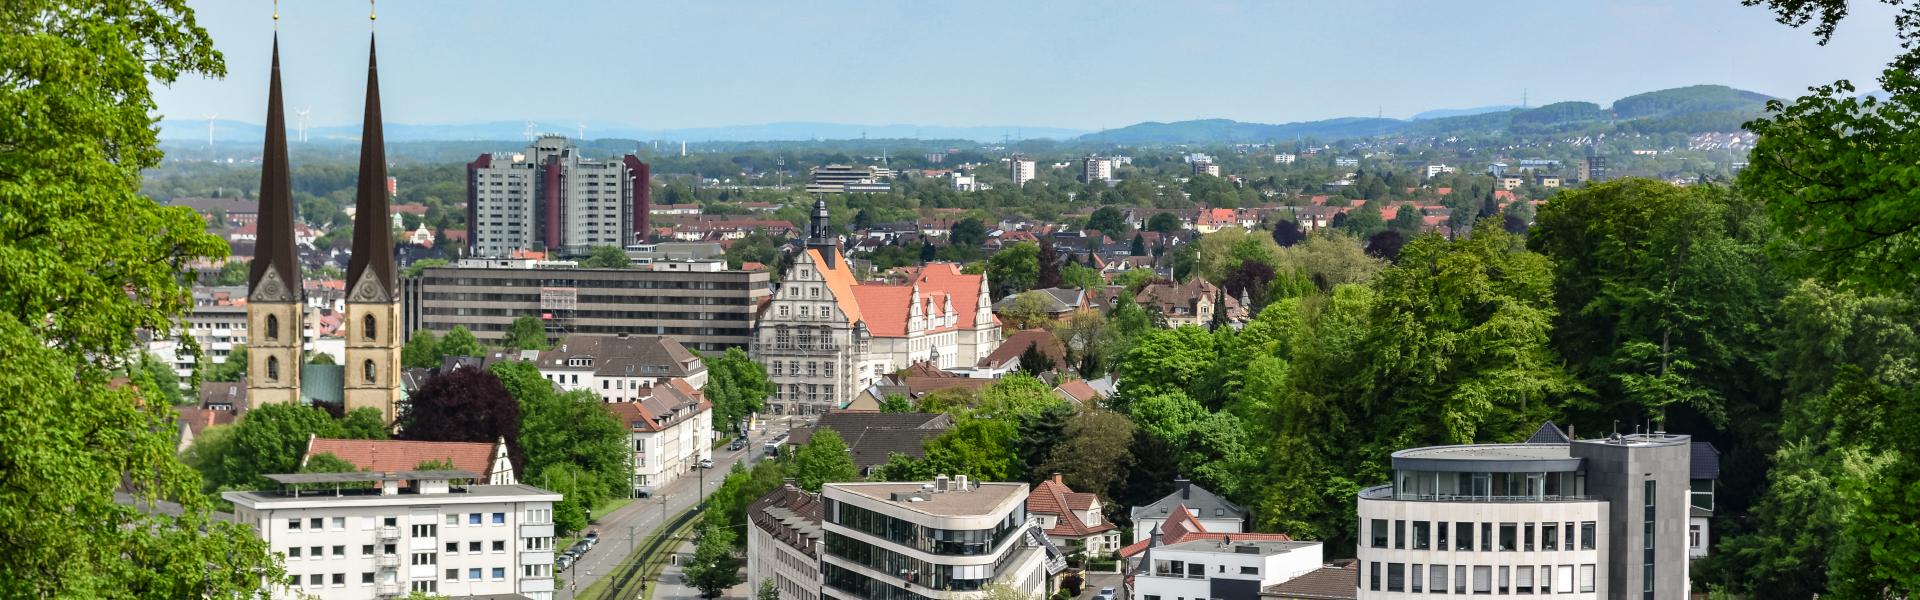 Bielefeld Scenic View